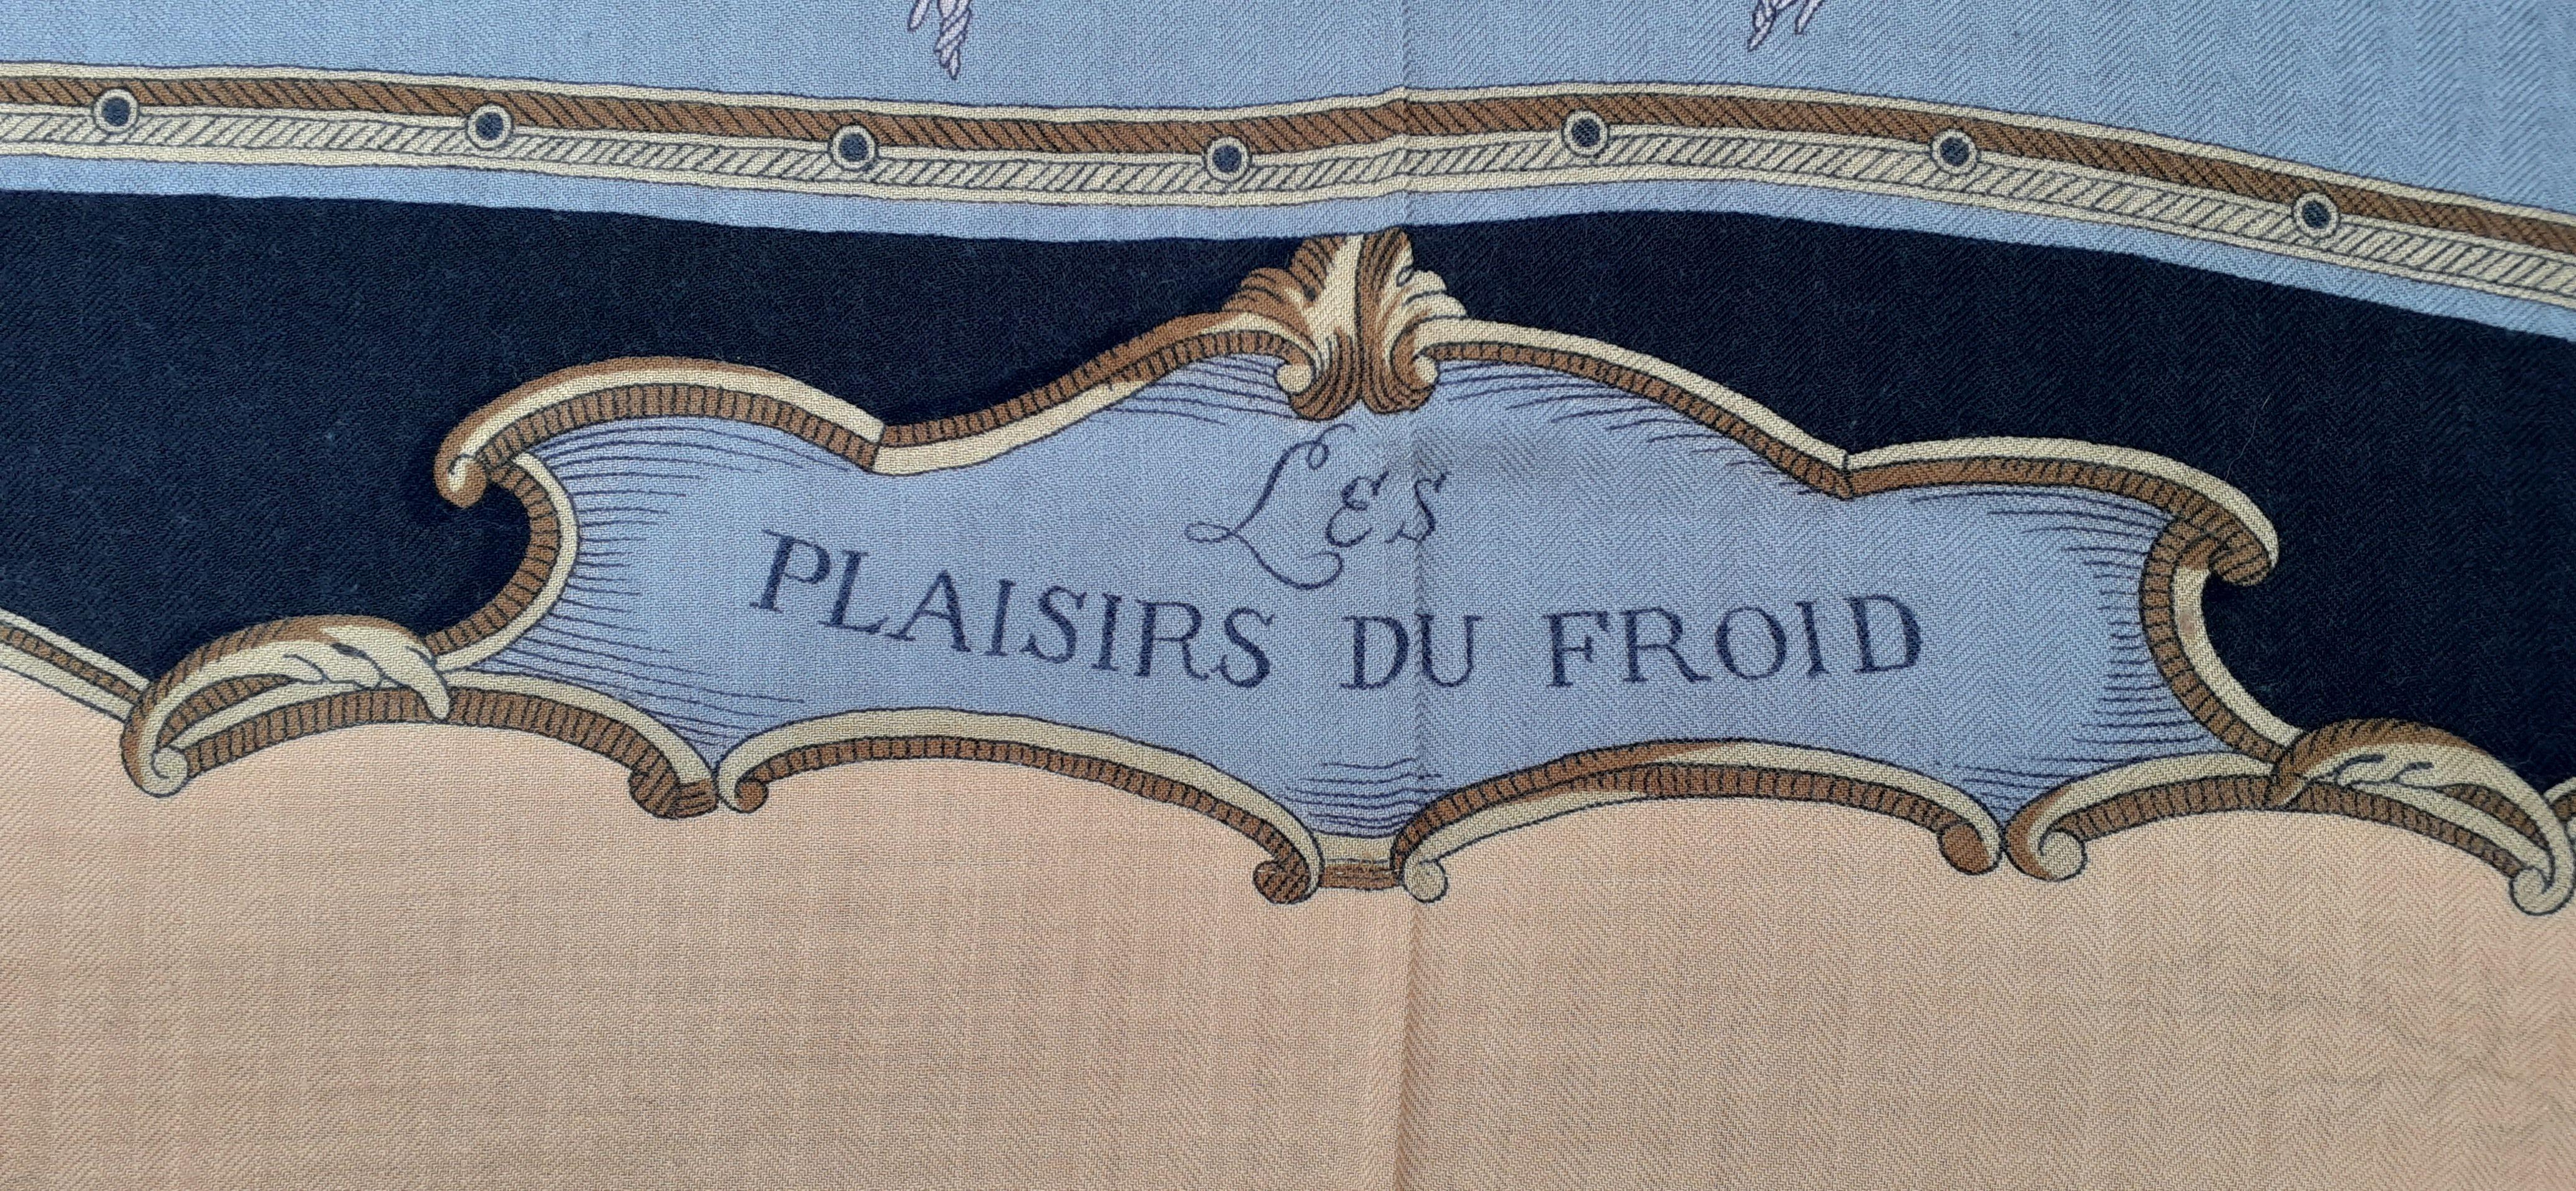 Wunderschöner authentischer Hermès-Schal

Druck: 